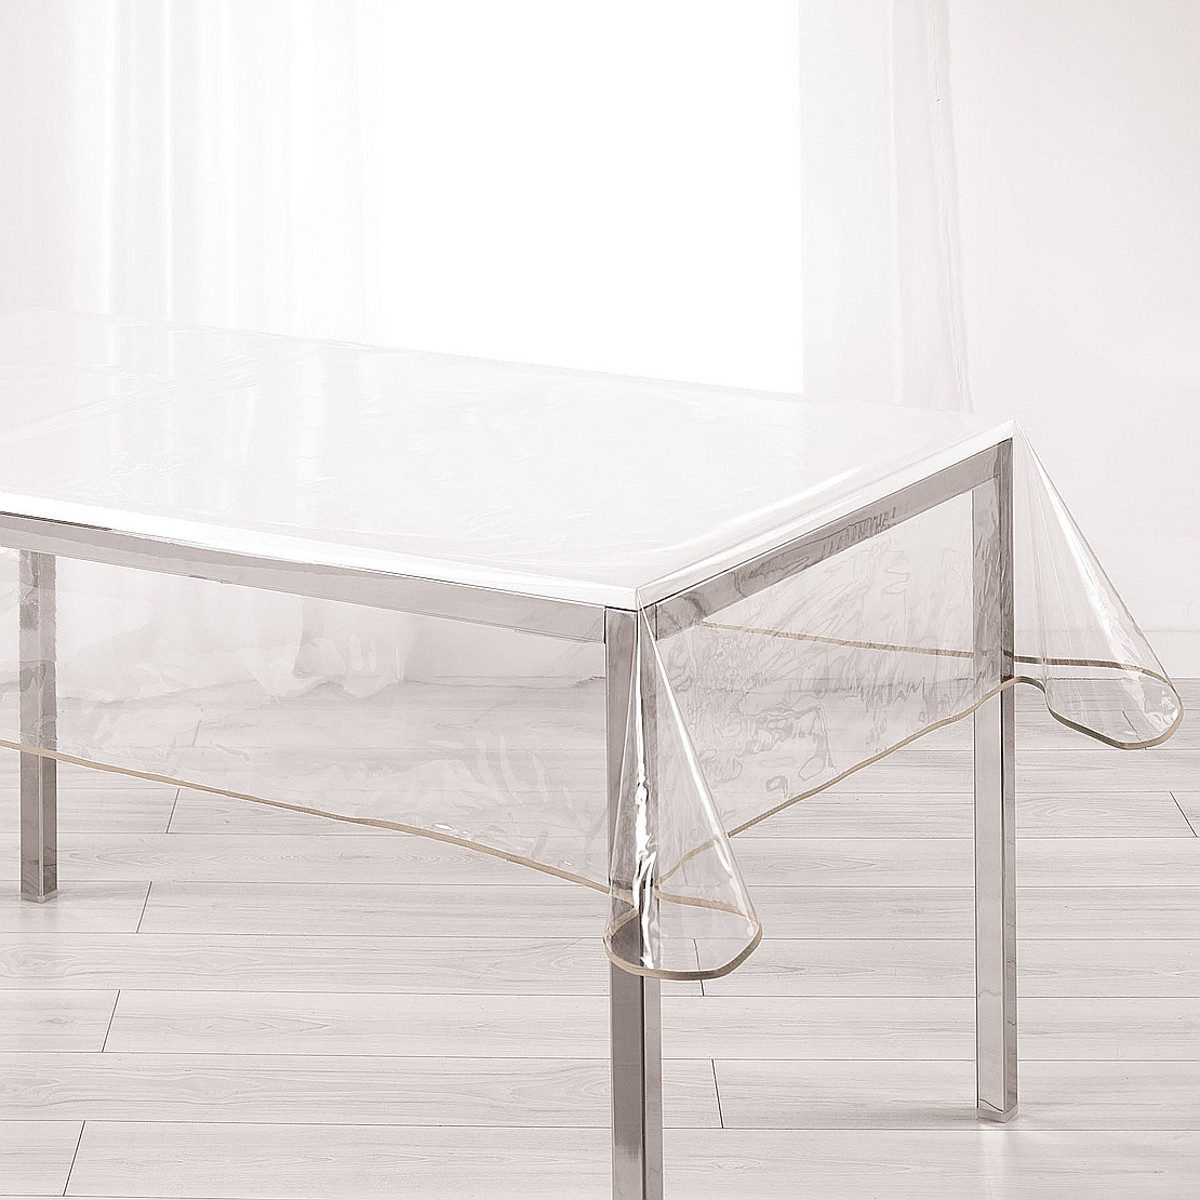 Sanixa Gartentischdecke Tischdecke PVC Transparent Beige 140 x 240 cm Tischtuch Kunststoff (Tischschutz Durchsichtig), Gartentischdecke Balkontischdecke Tischtuch